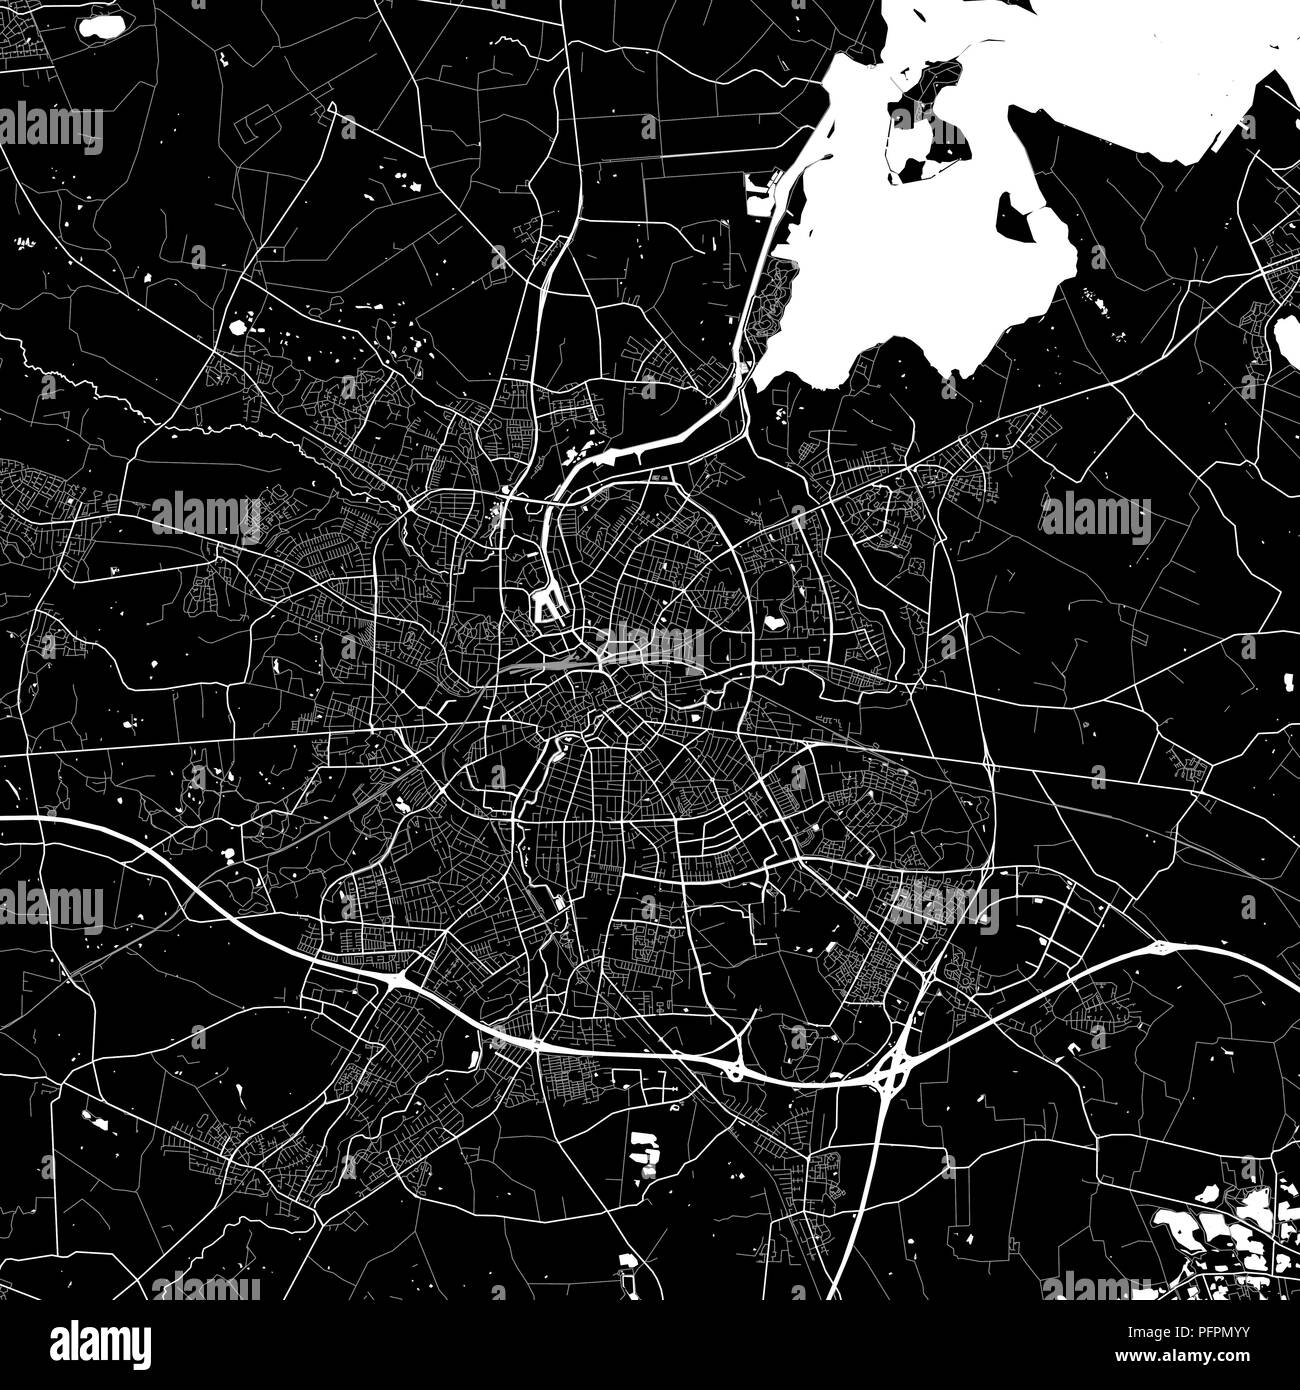 Carte de la région d'Odense, Danemark. Fond sombre version pour l'infographie et des projets de marketing. Cette carte d'Odense, contient des repères typiques avec stree Illustration de Vecteur